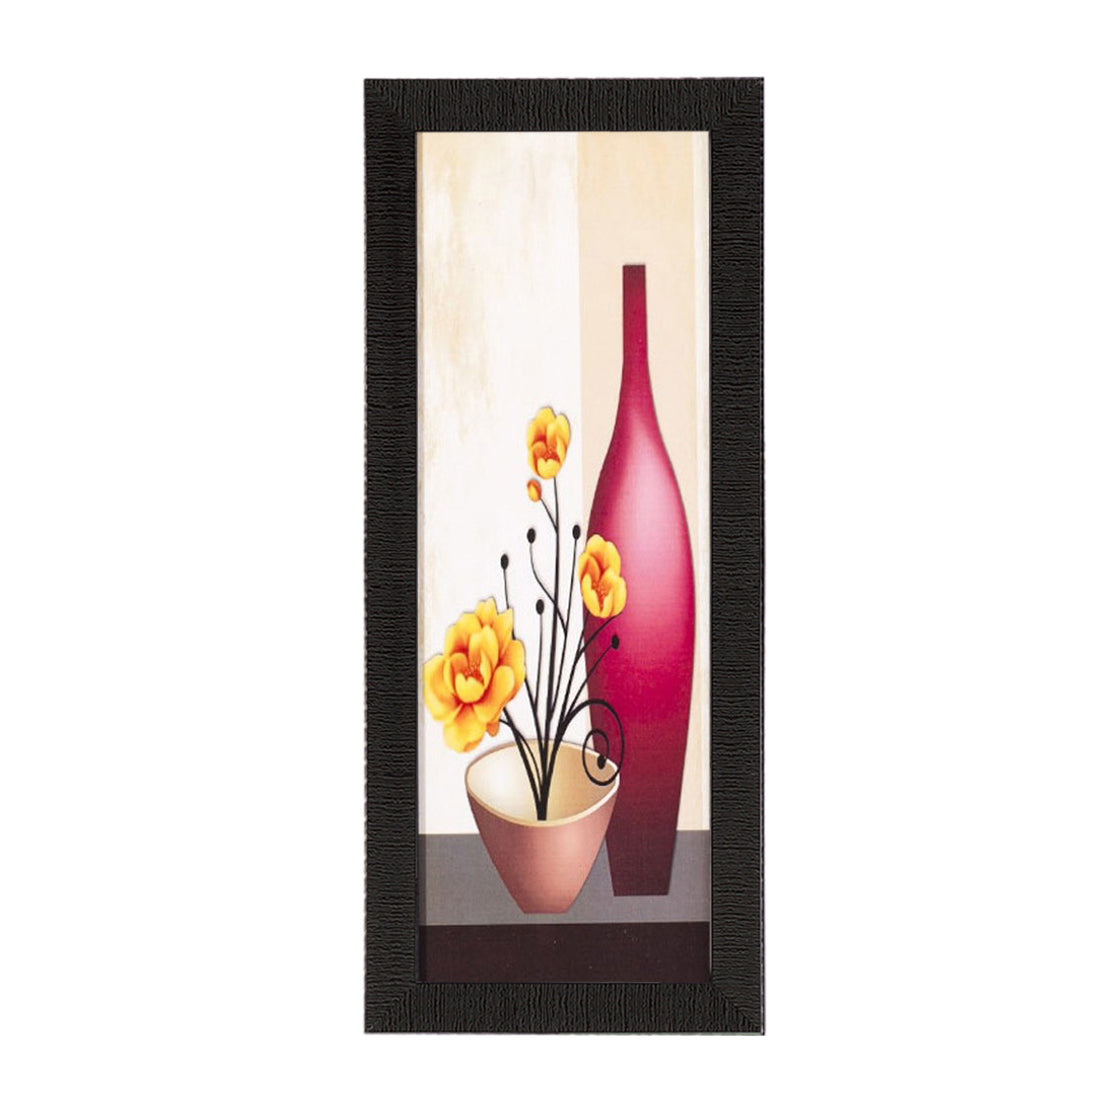 Abstract Red Vase Satin Matt Texture UV Art Painting